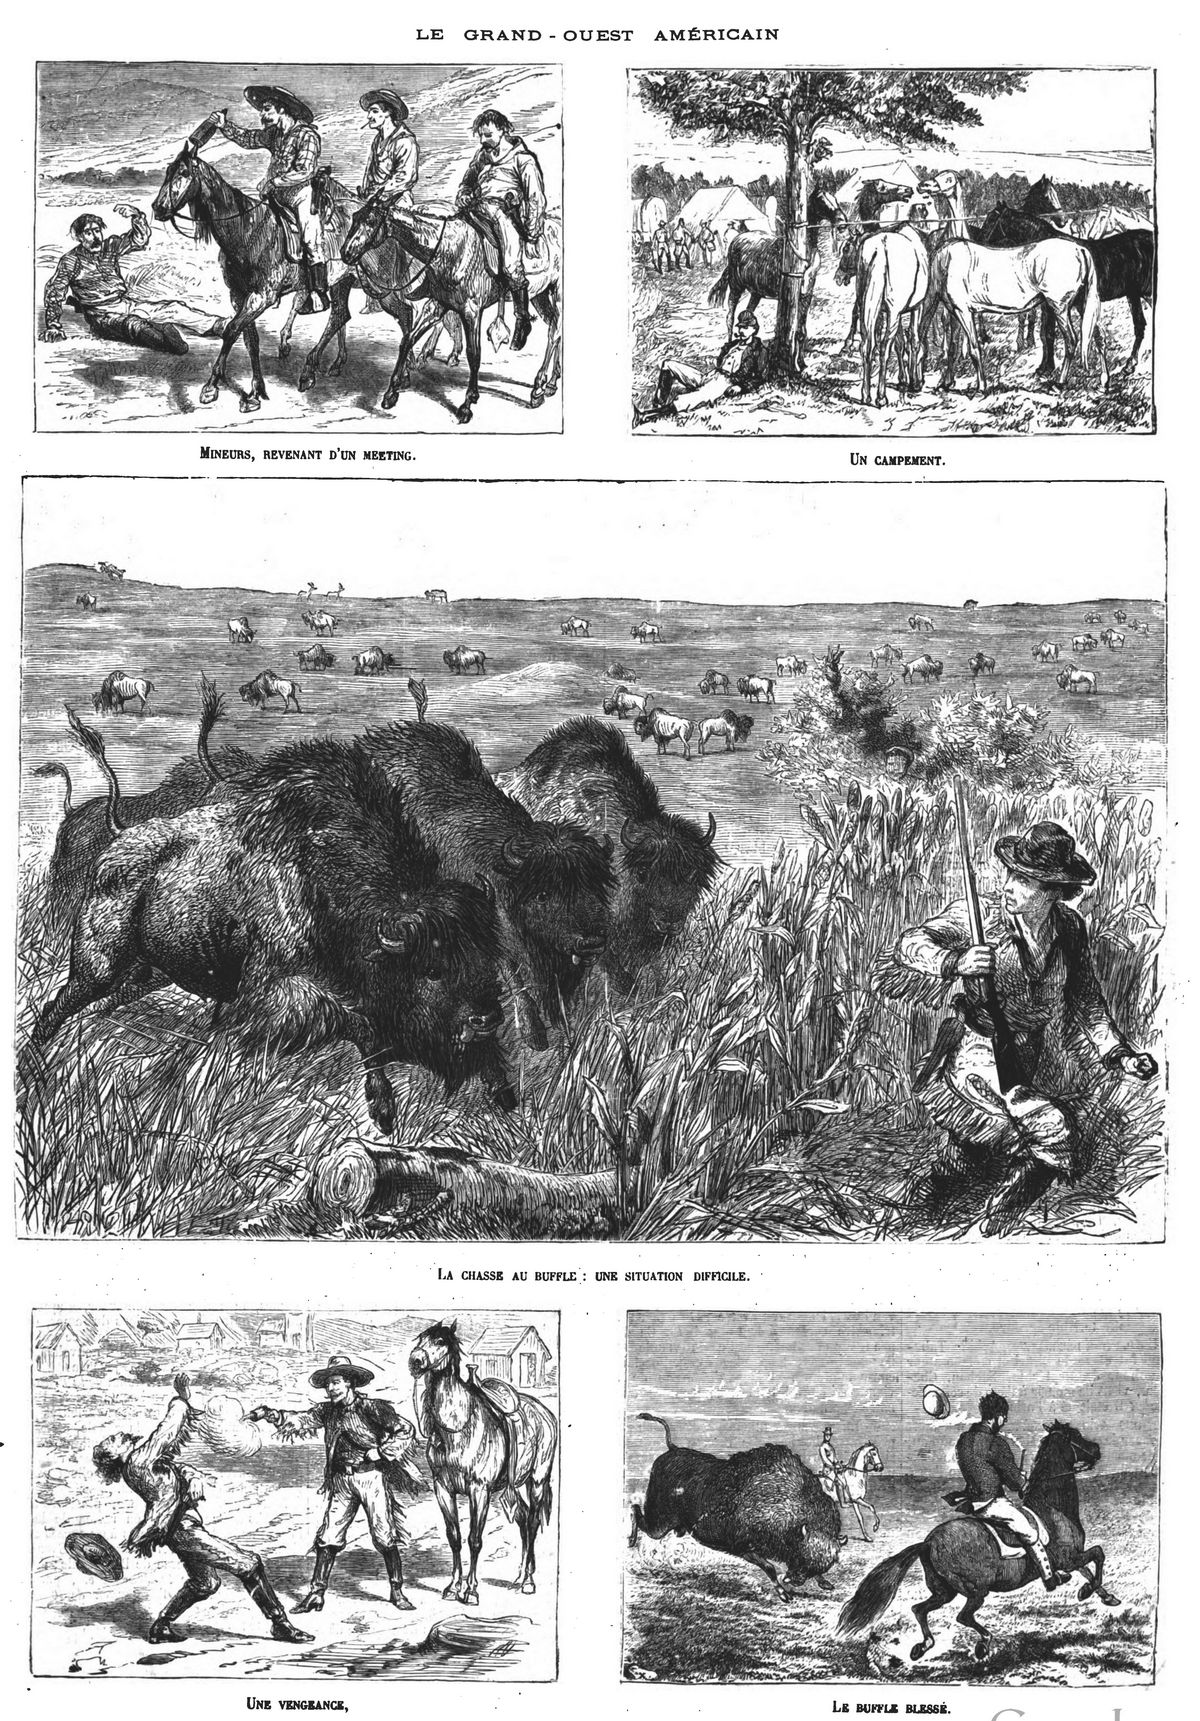 Le Grand-Ouest américain : Mineurs revenant d’un meeting; Un campement; La chasse au buffle : une situation difficile ; Une vengeance; Le buffle blessé. (gravure 1874)